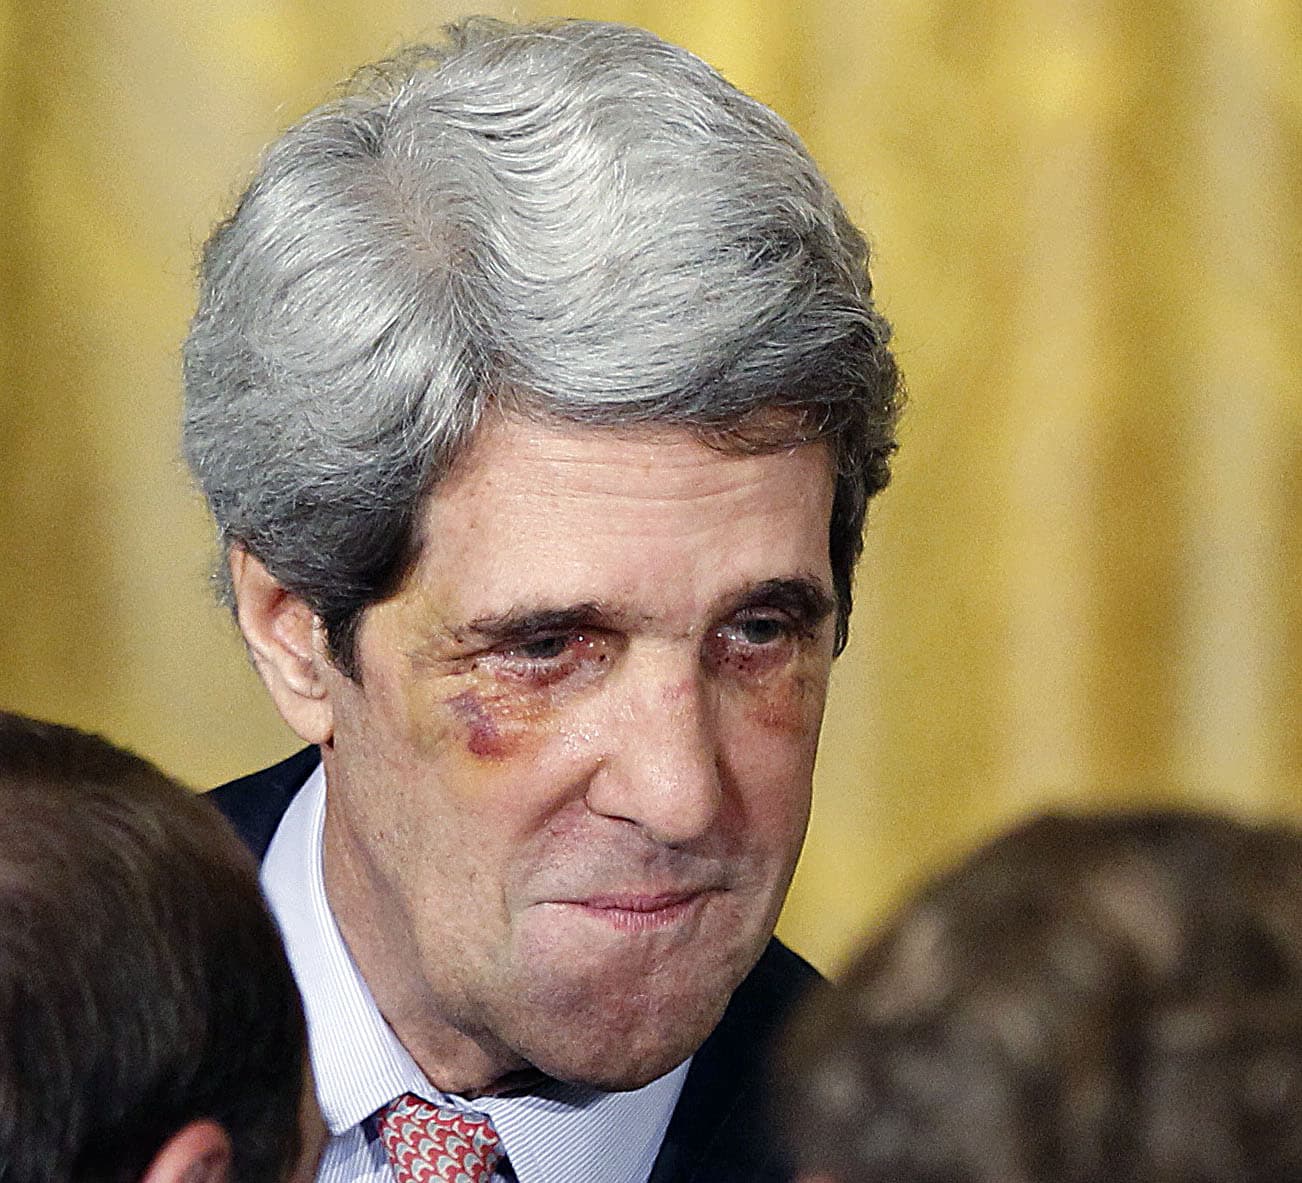 John Kerry Before Plastic Surgery 1